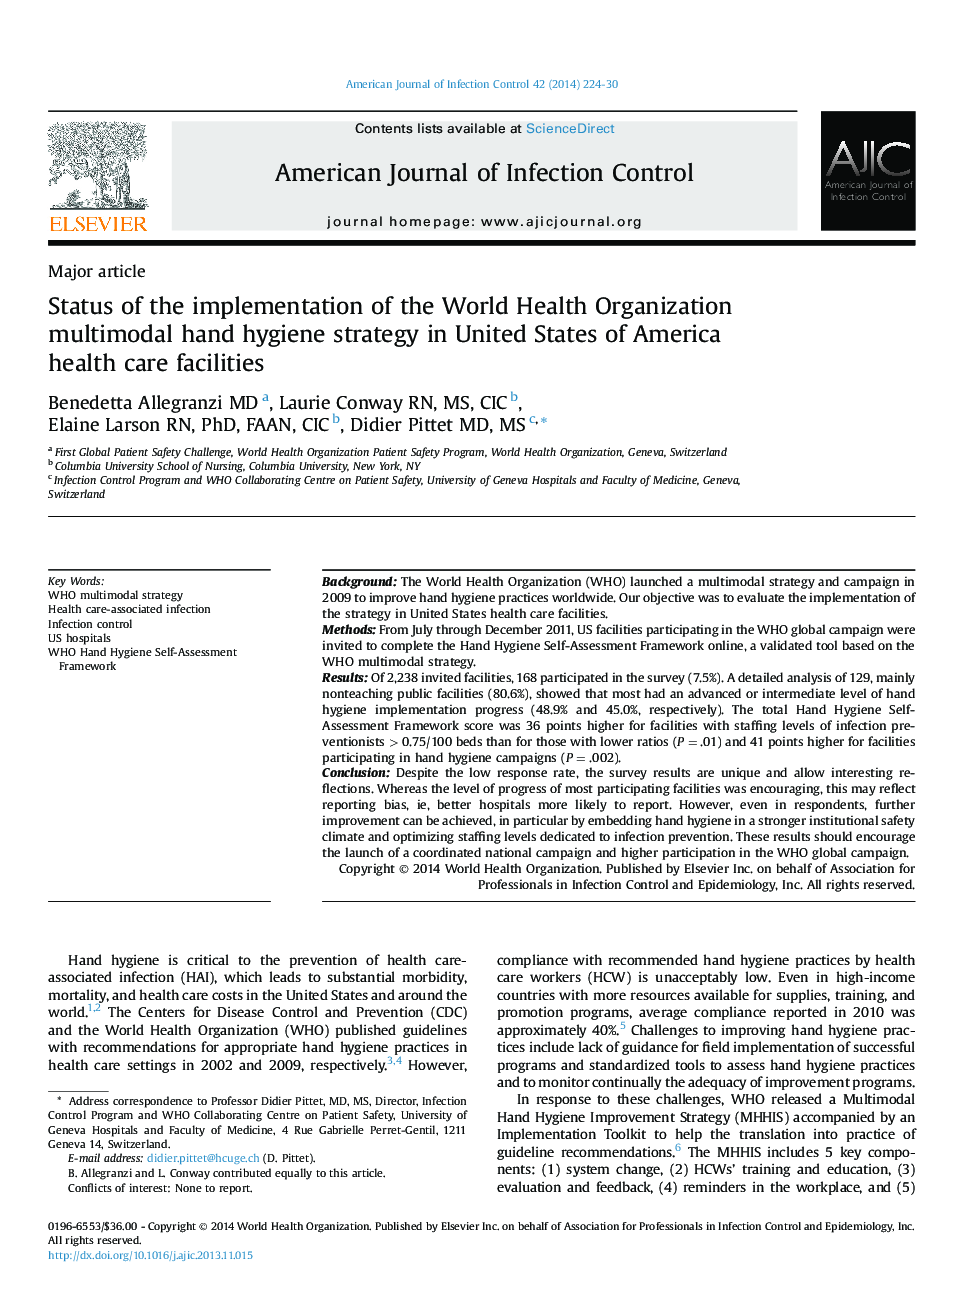 وضعیت اجرای استراتژی بهداشت دست چندوجهی سازمان بهداشت جهانی در مراکز بهداشتی ایالات متحده